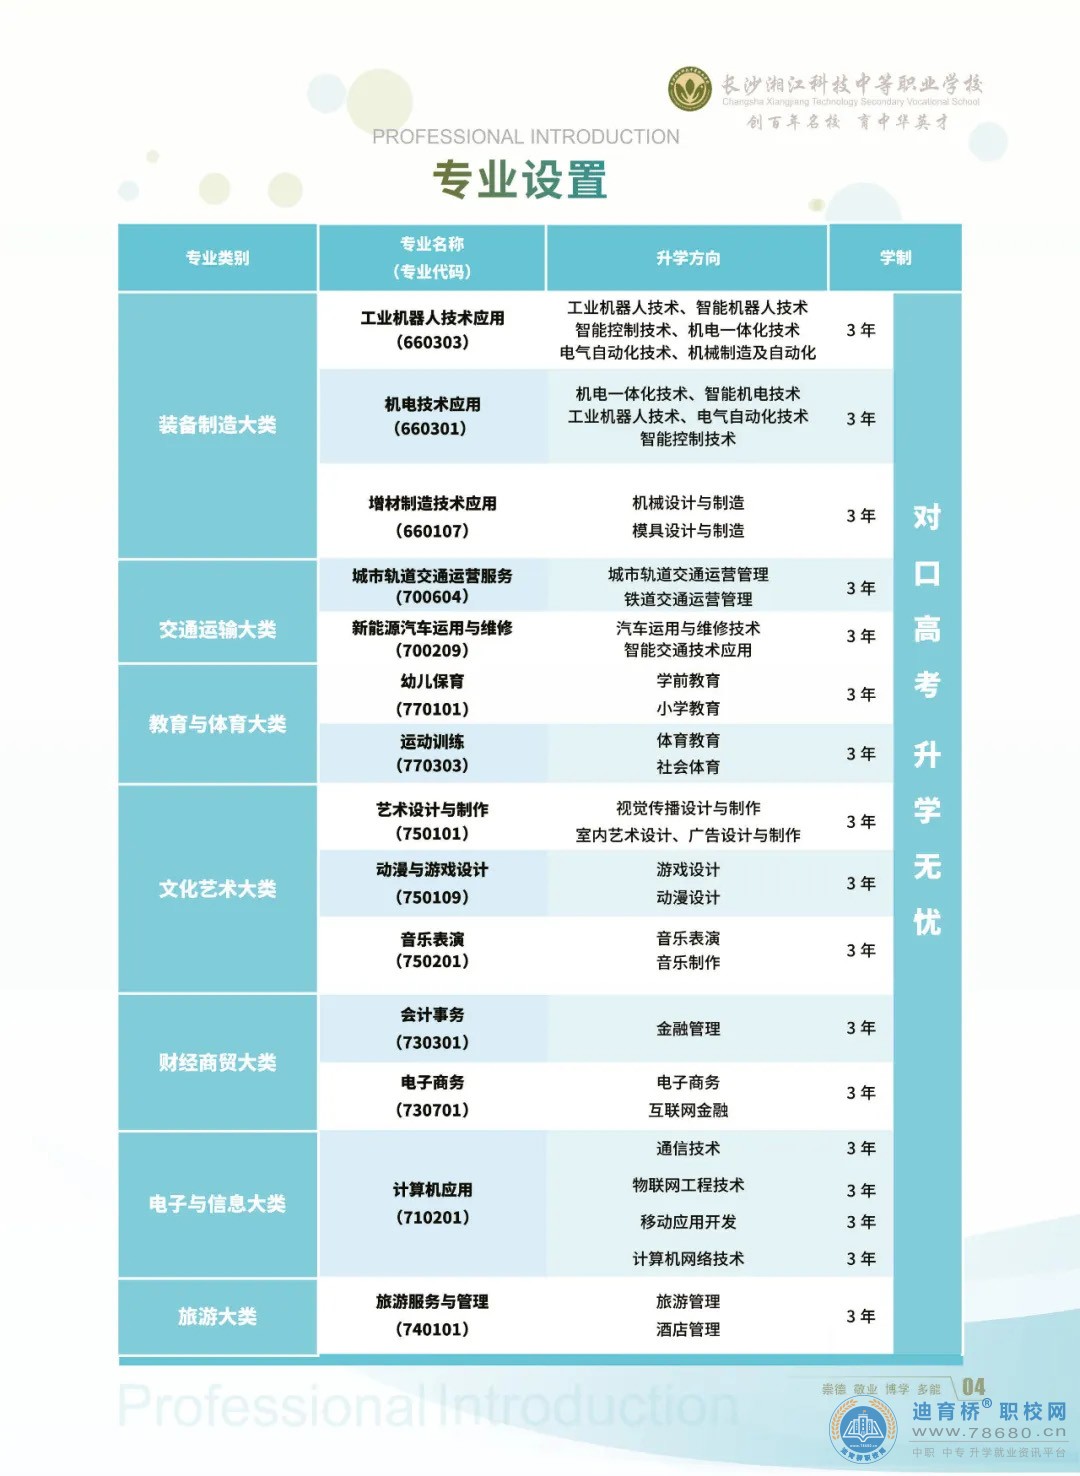 长沙湘江科技中等职业学校2023年招生简章